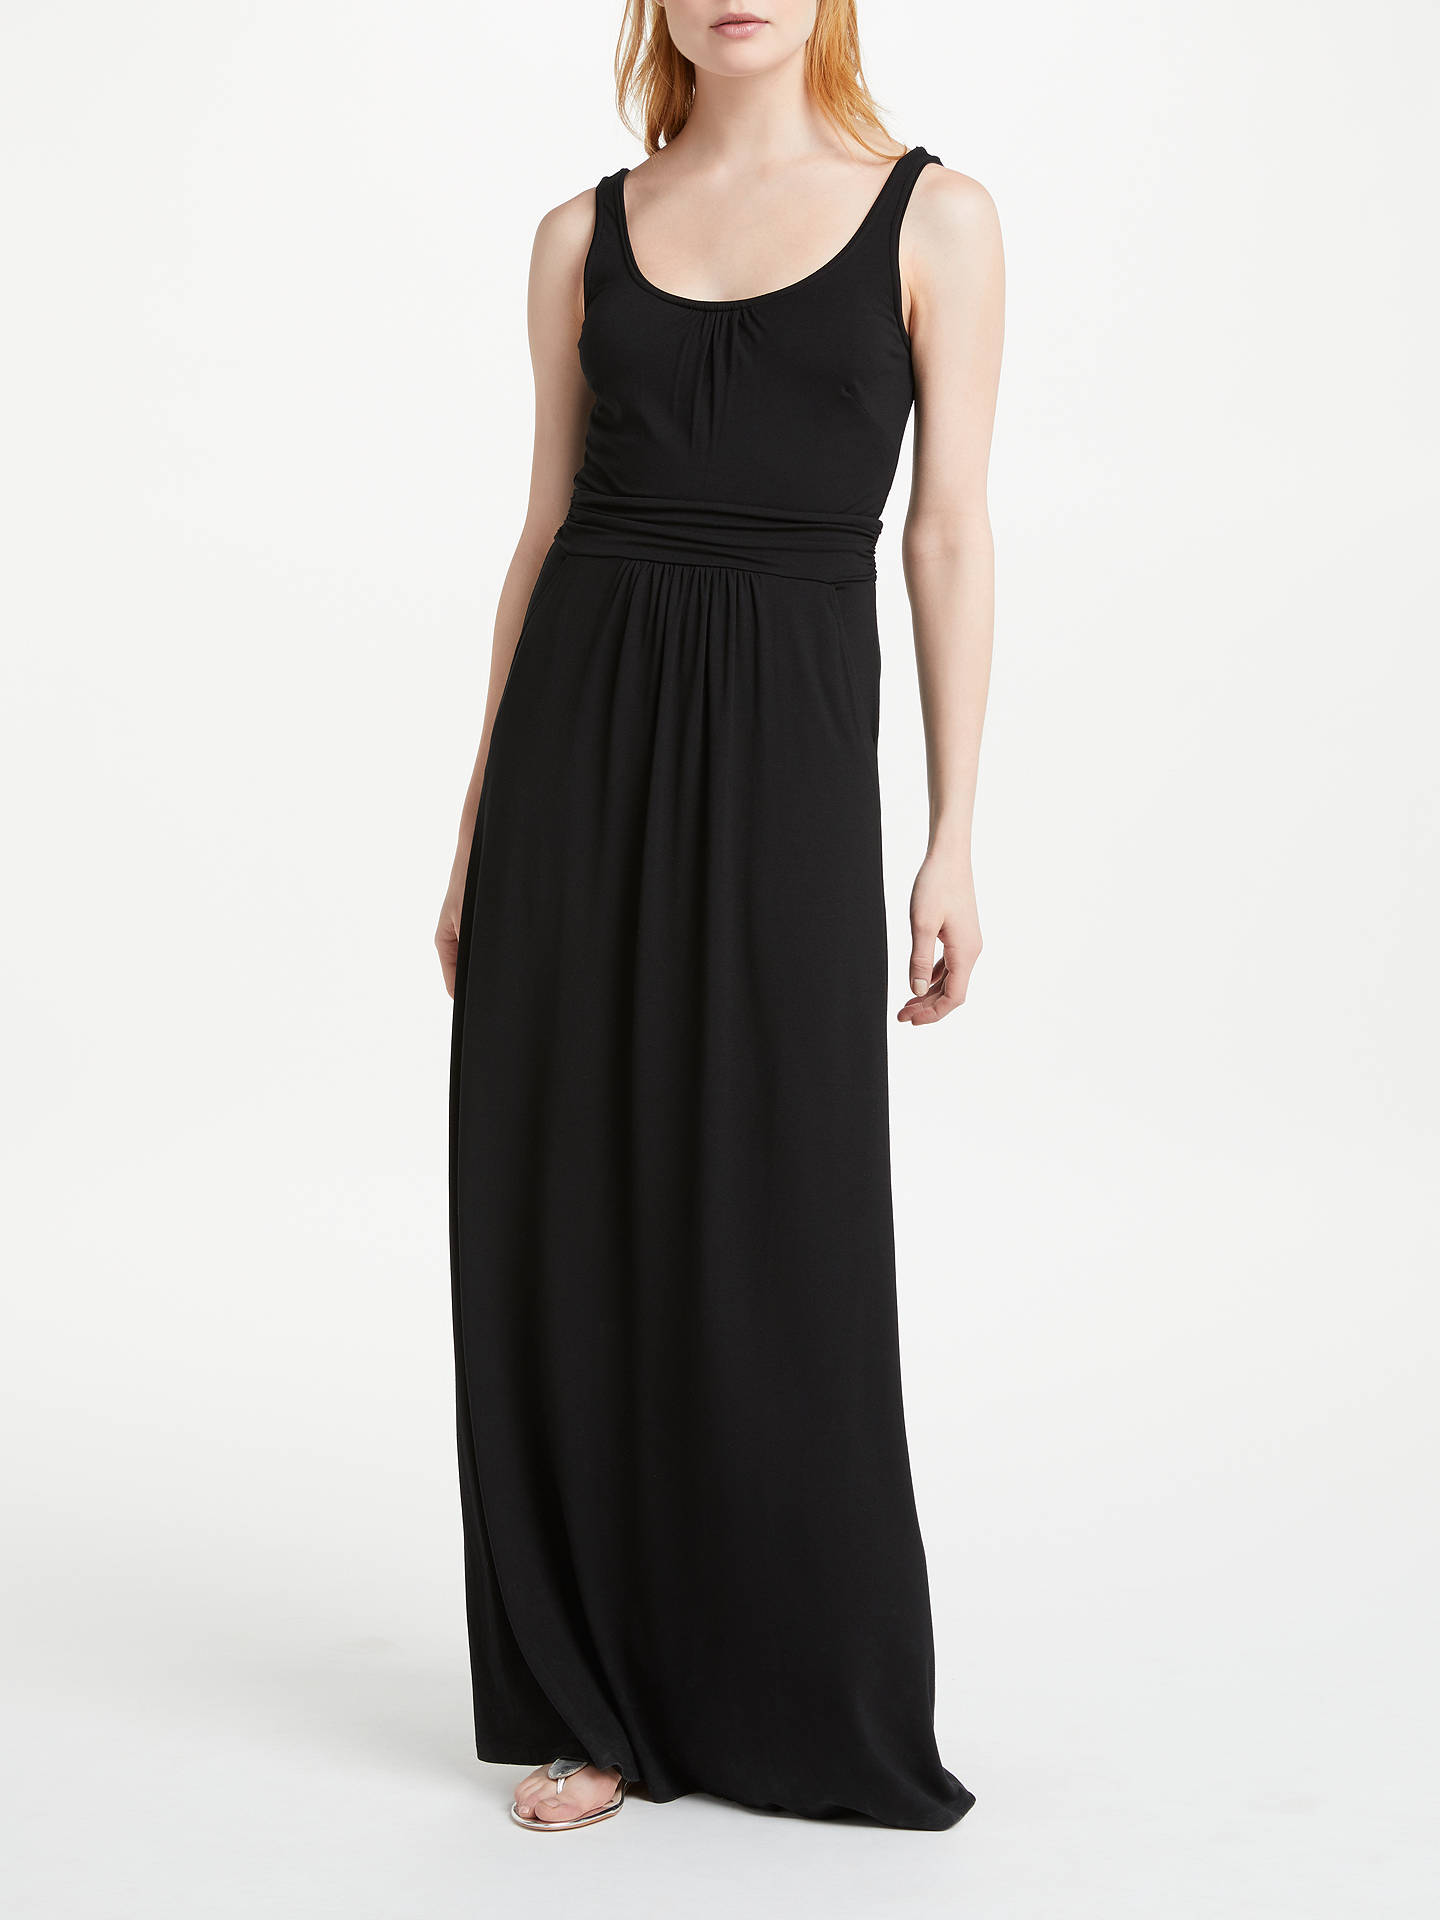 Boden Diana Jersey Maxi Dress, Black at John Lewis & Partners